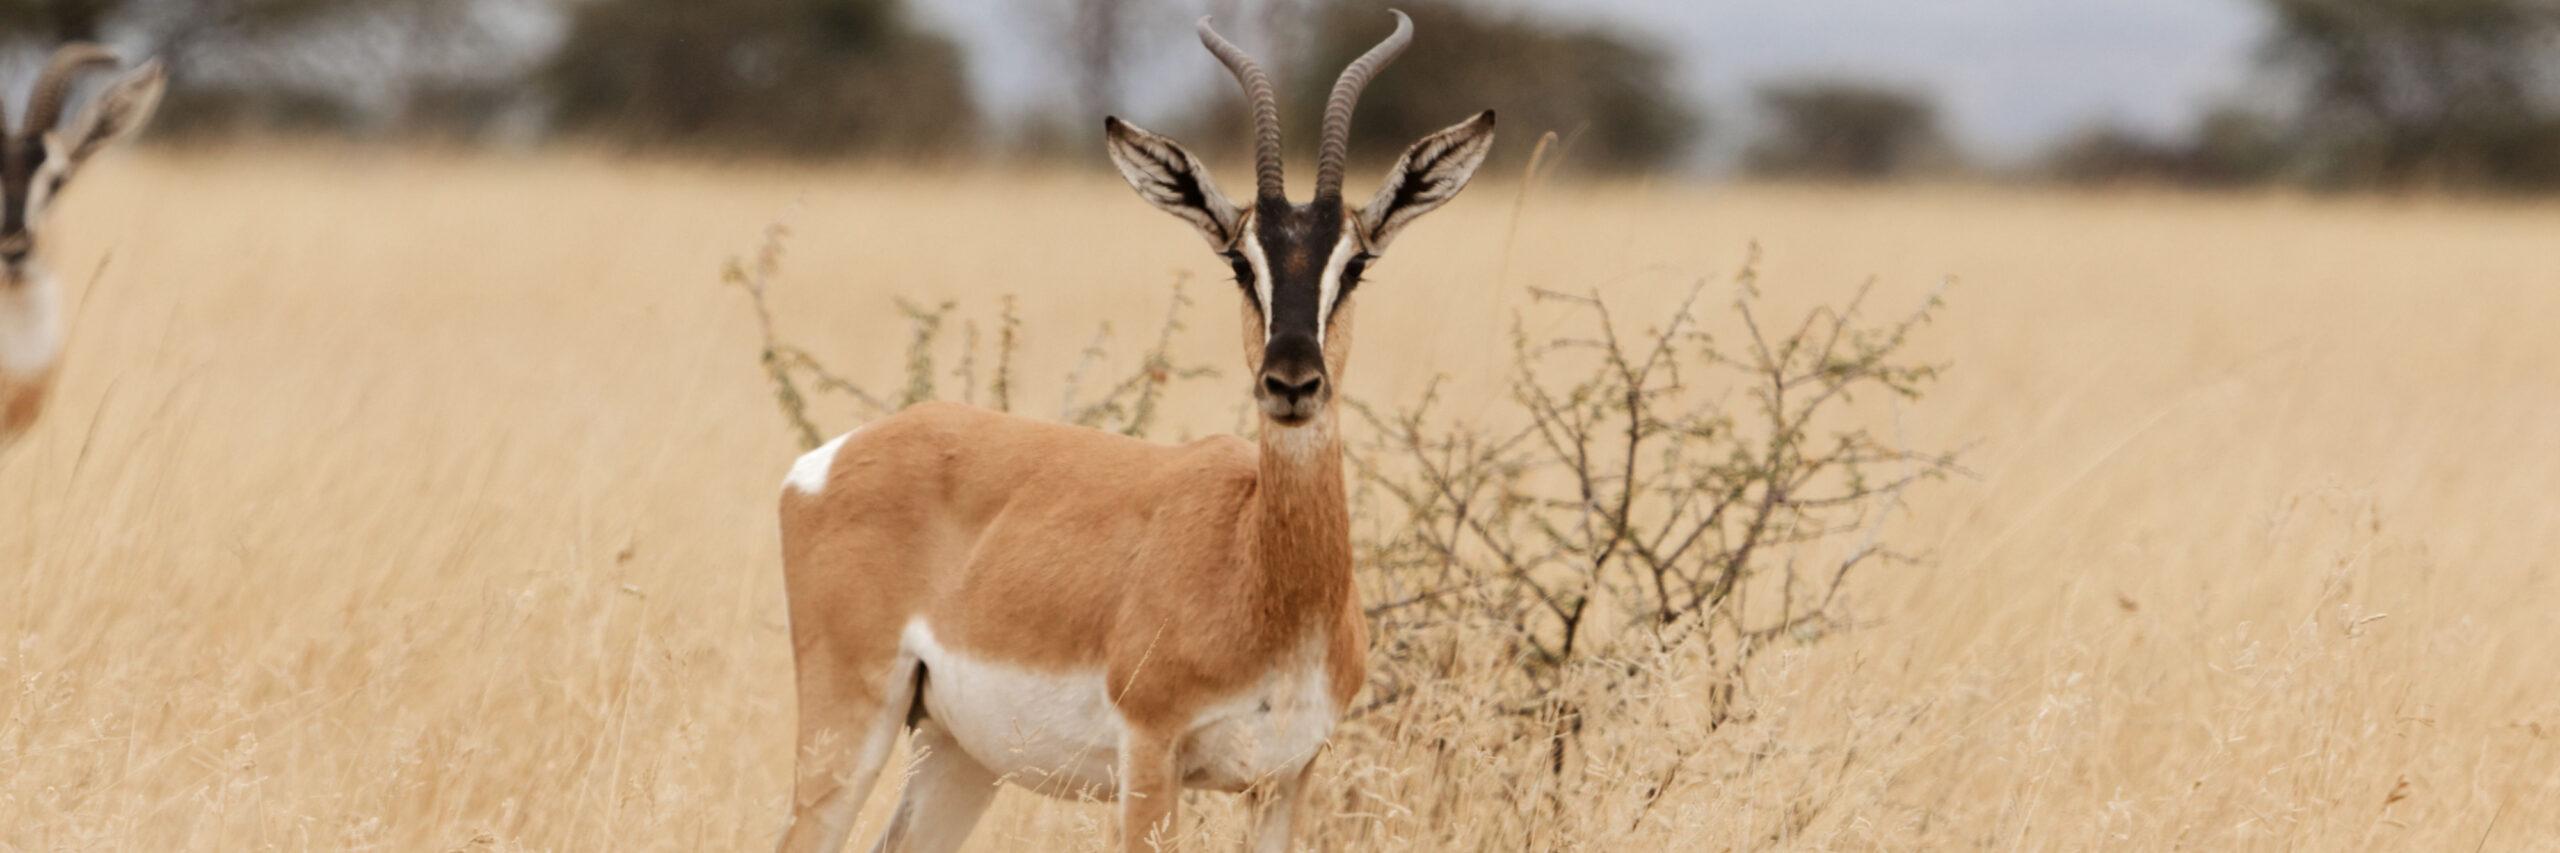 soemmering-gazelle